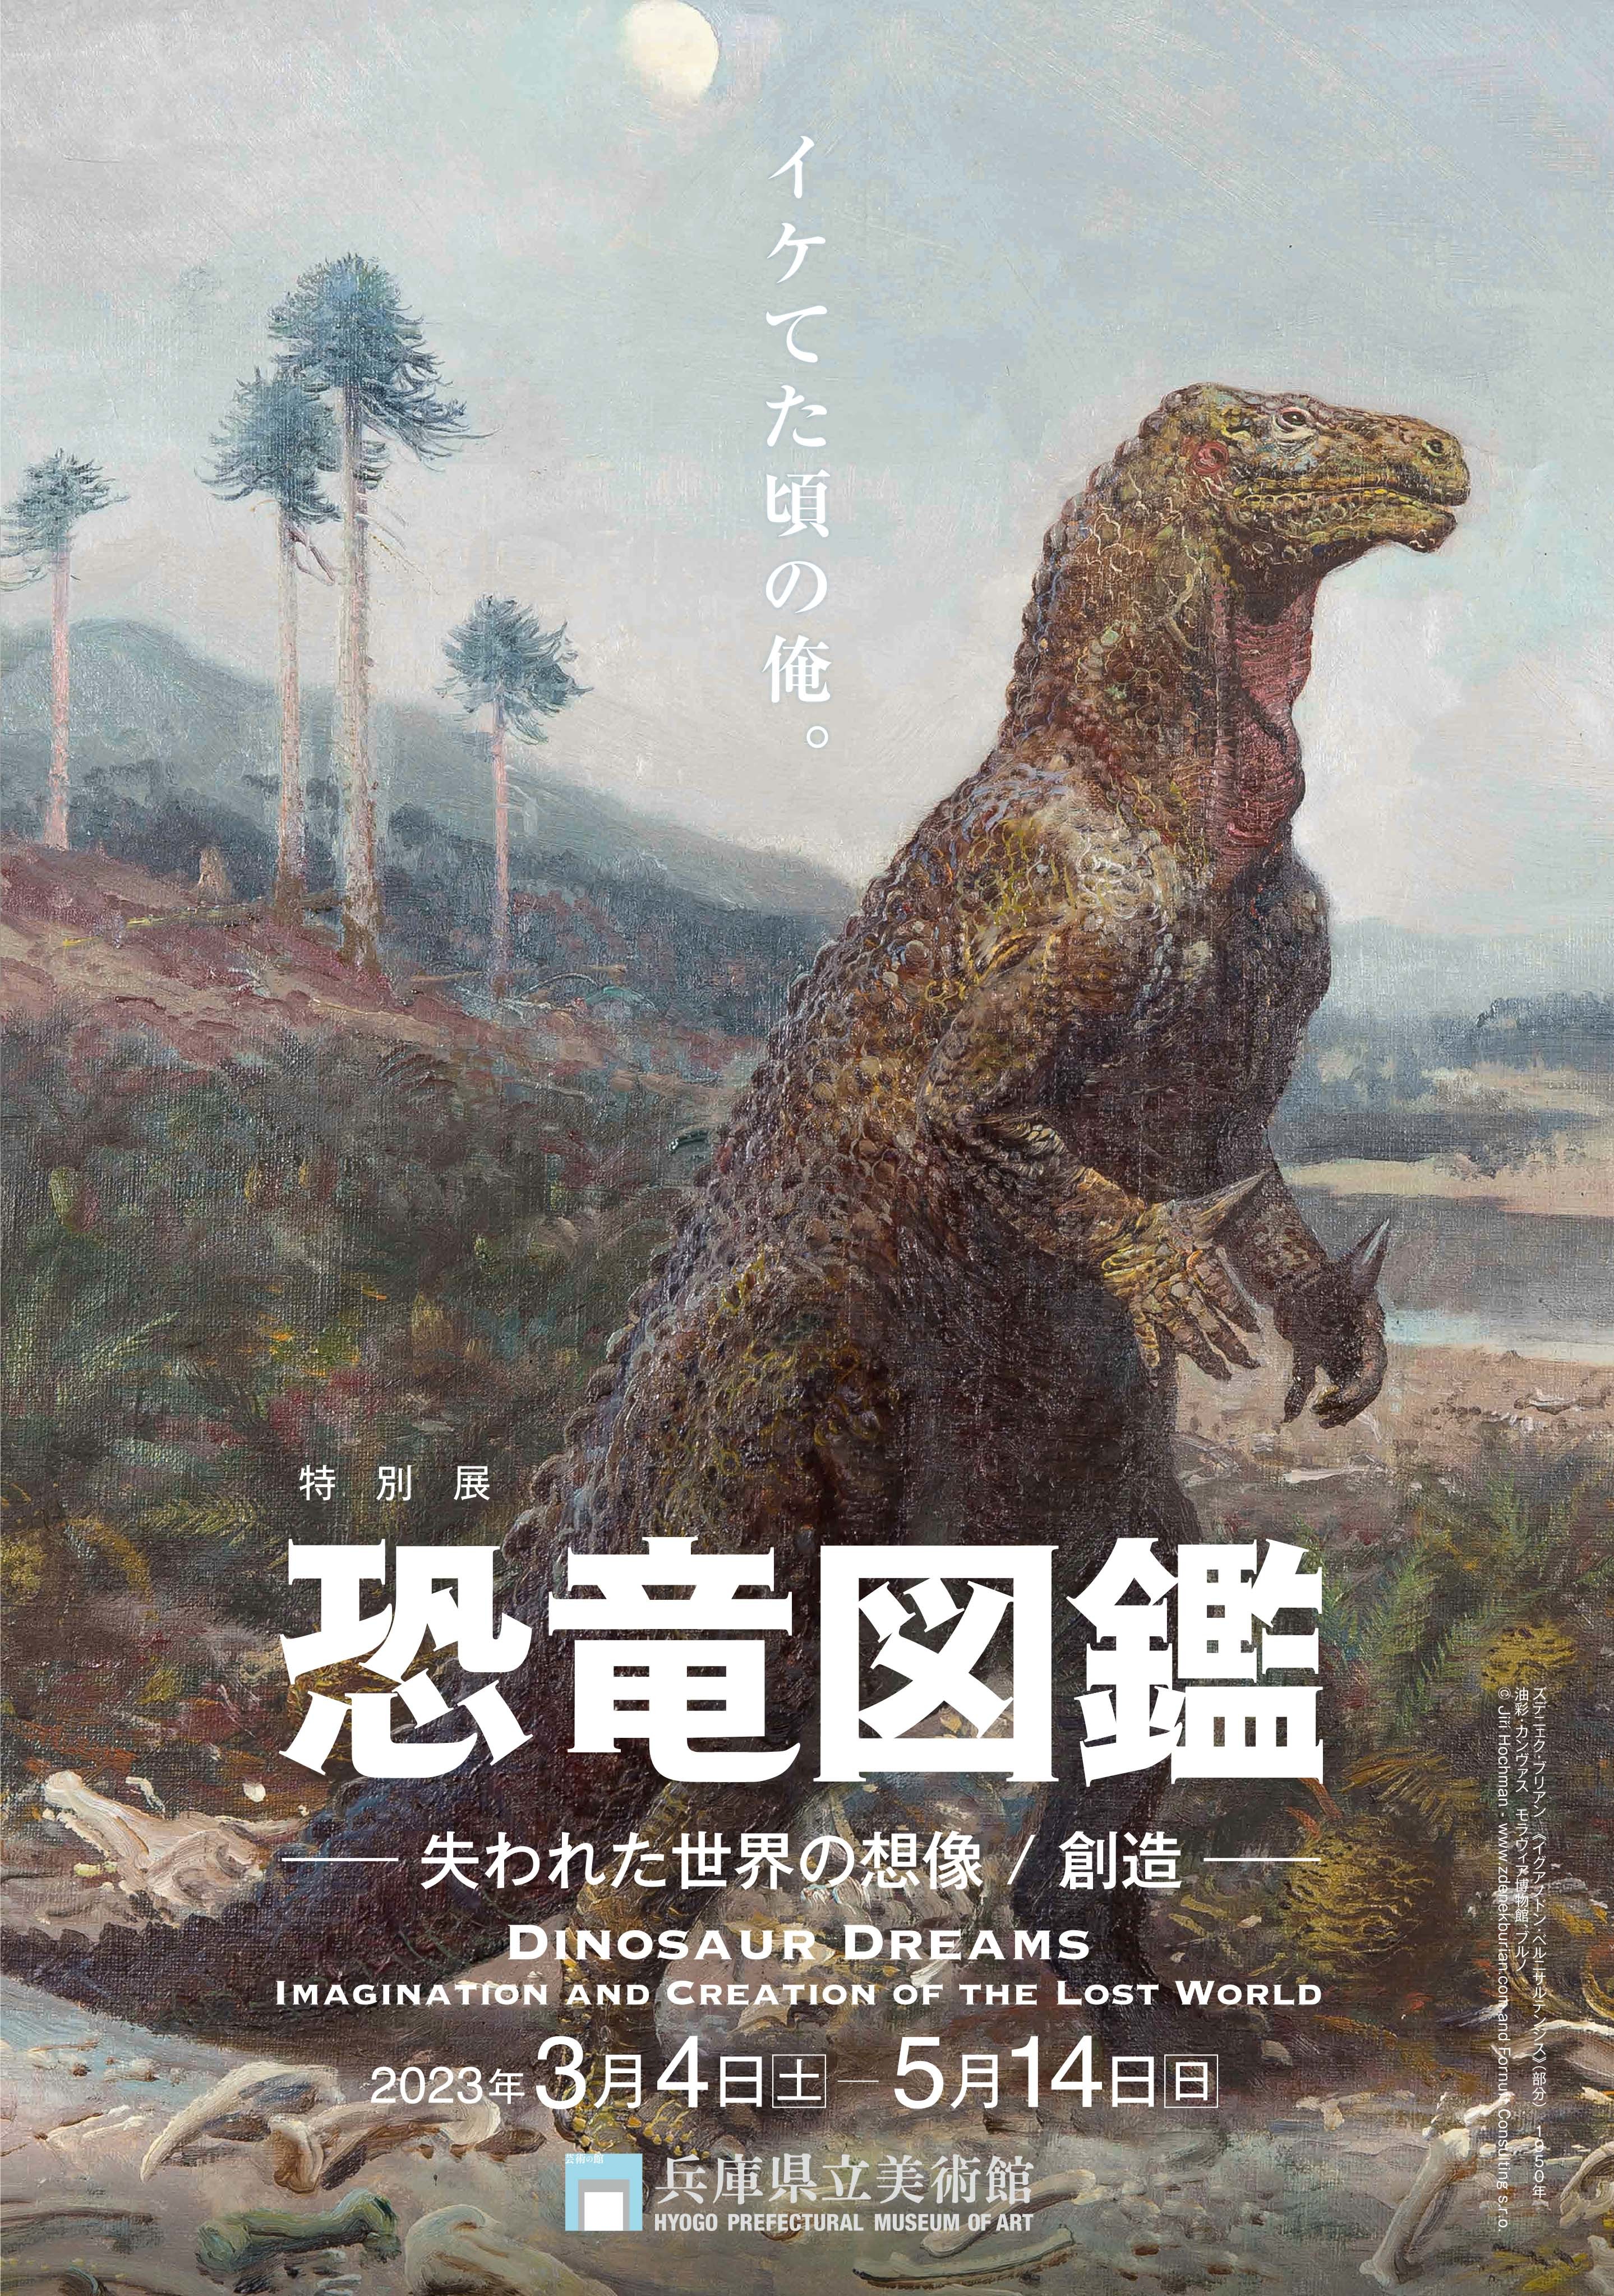 恐竜絵画の歴史をたどる特別展『恐竜図鑑』、化石に基づいて描かれた